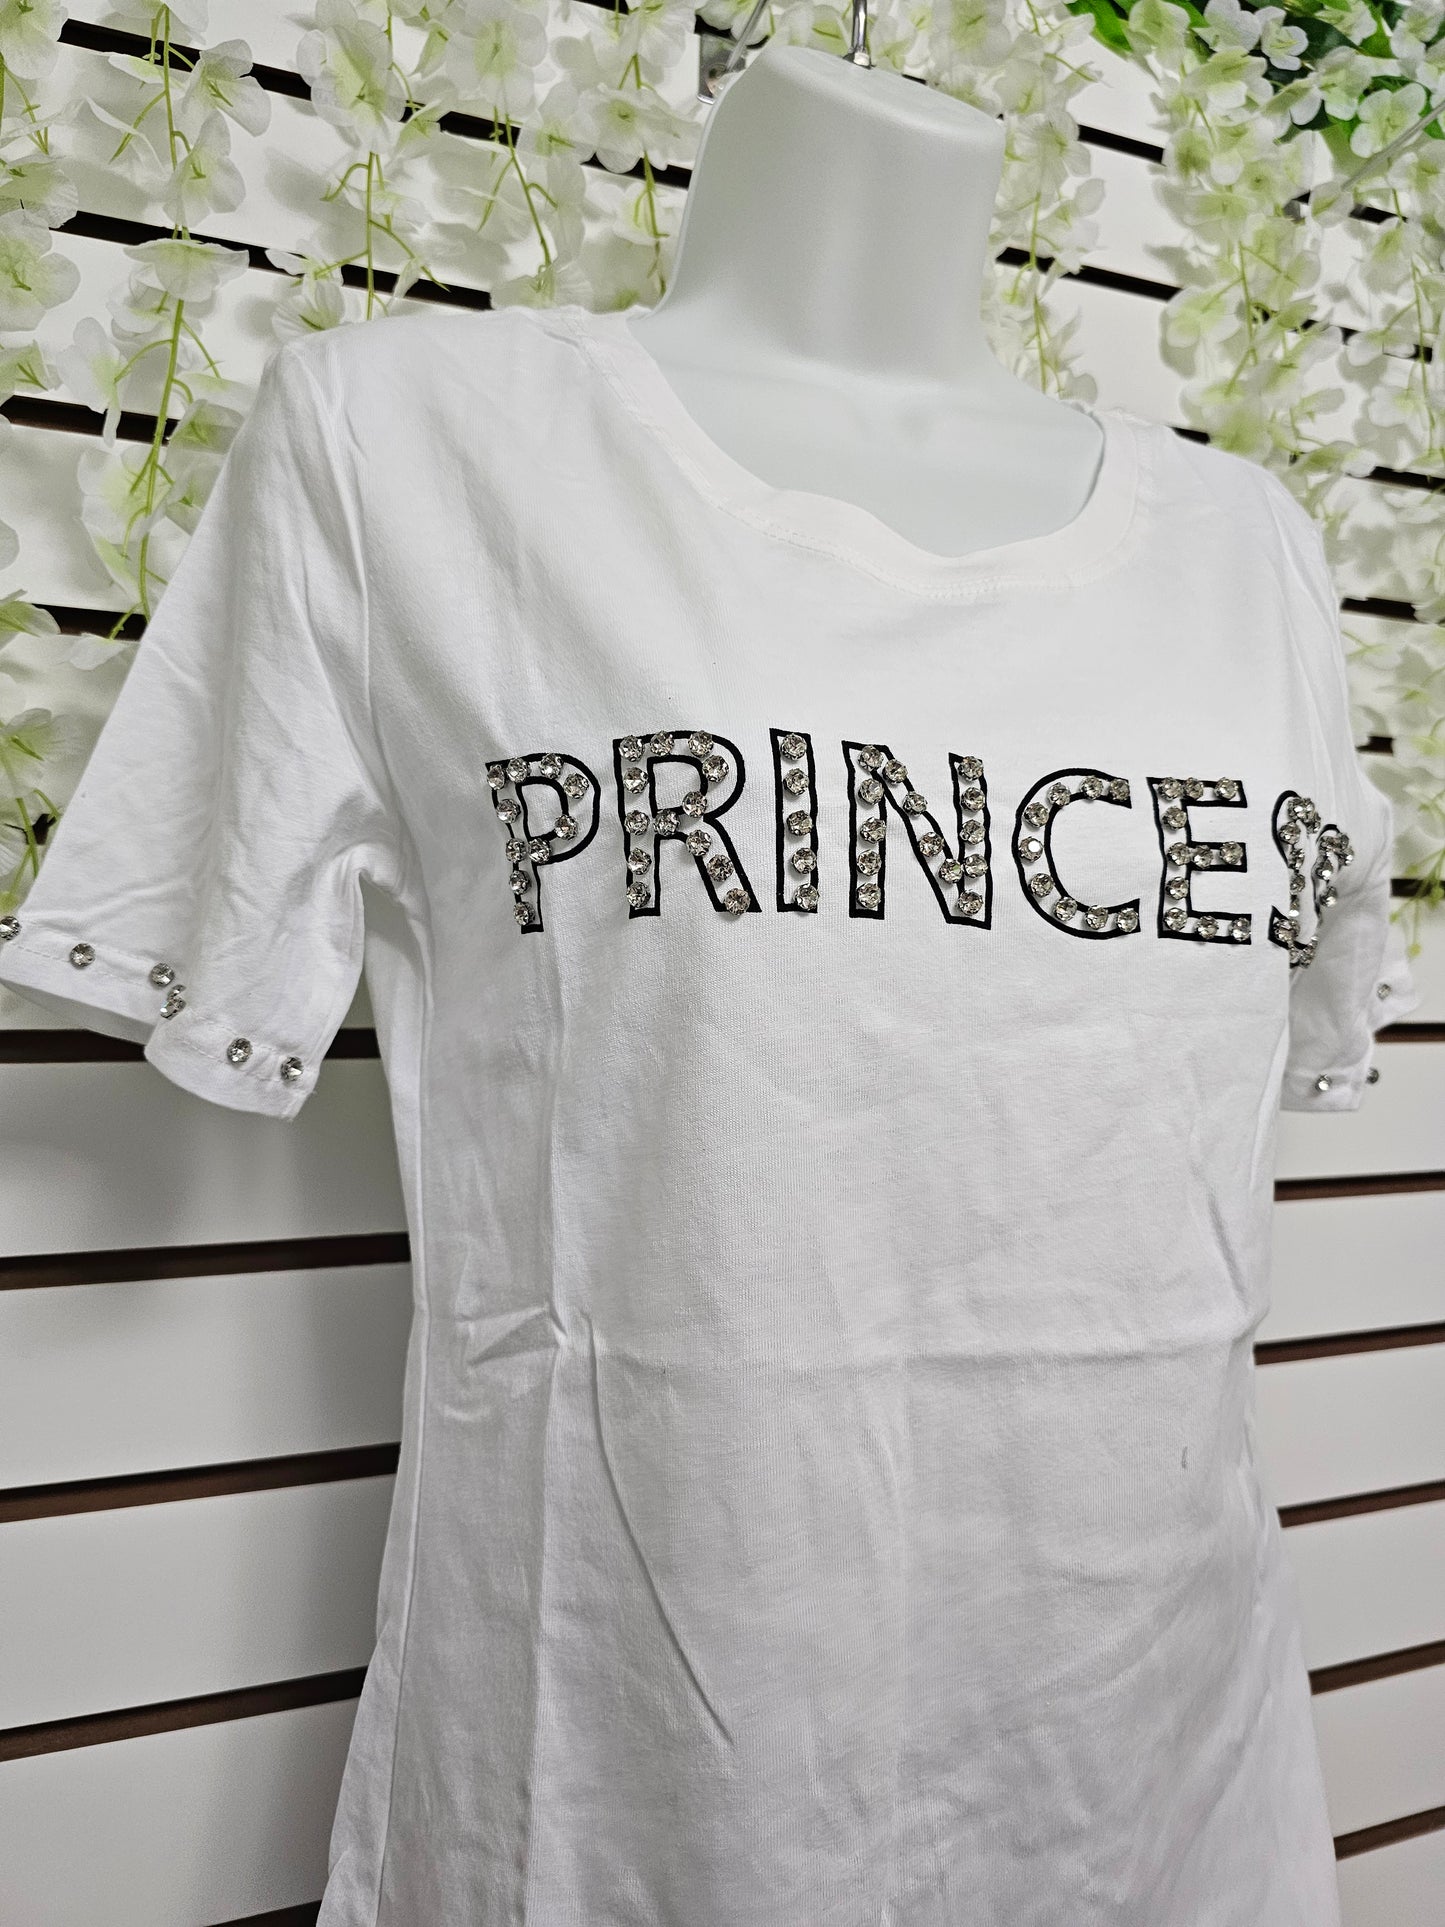 T-shirt Blanca princess